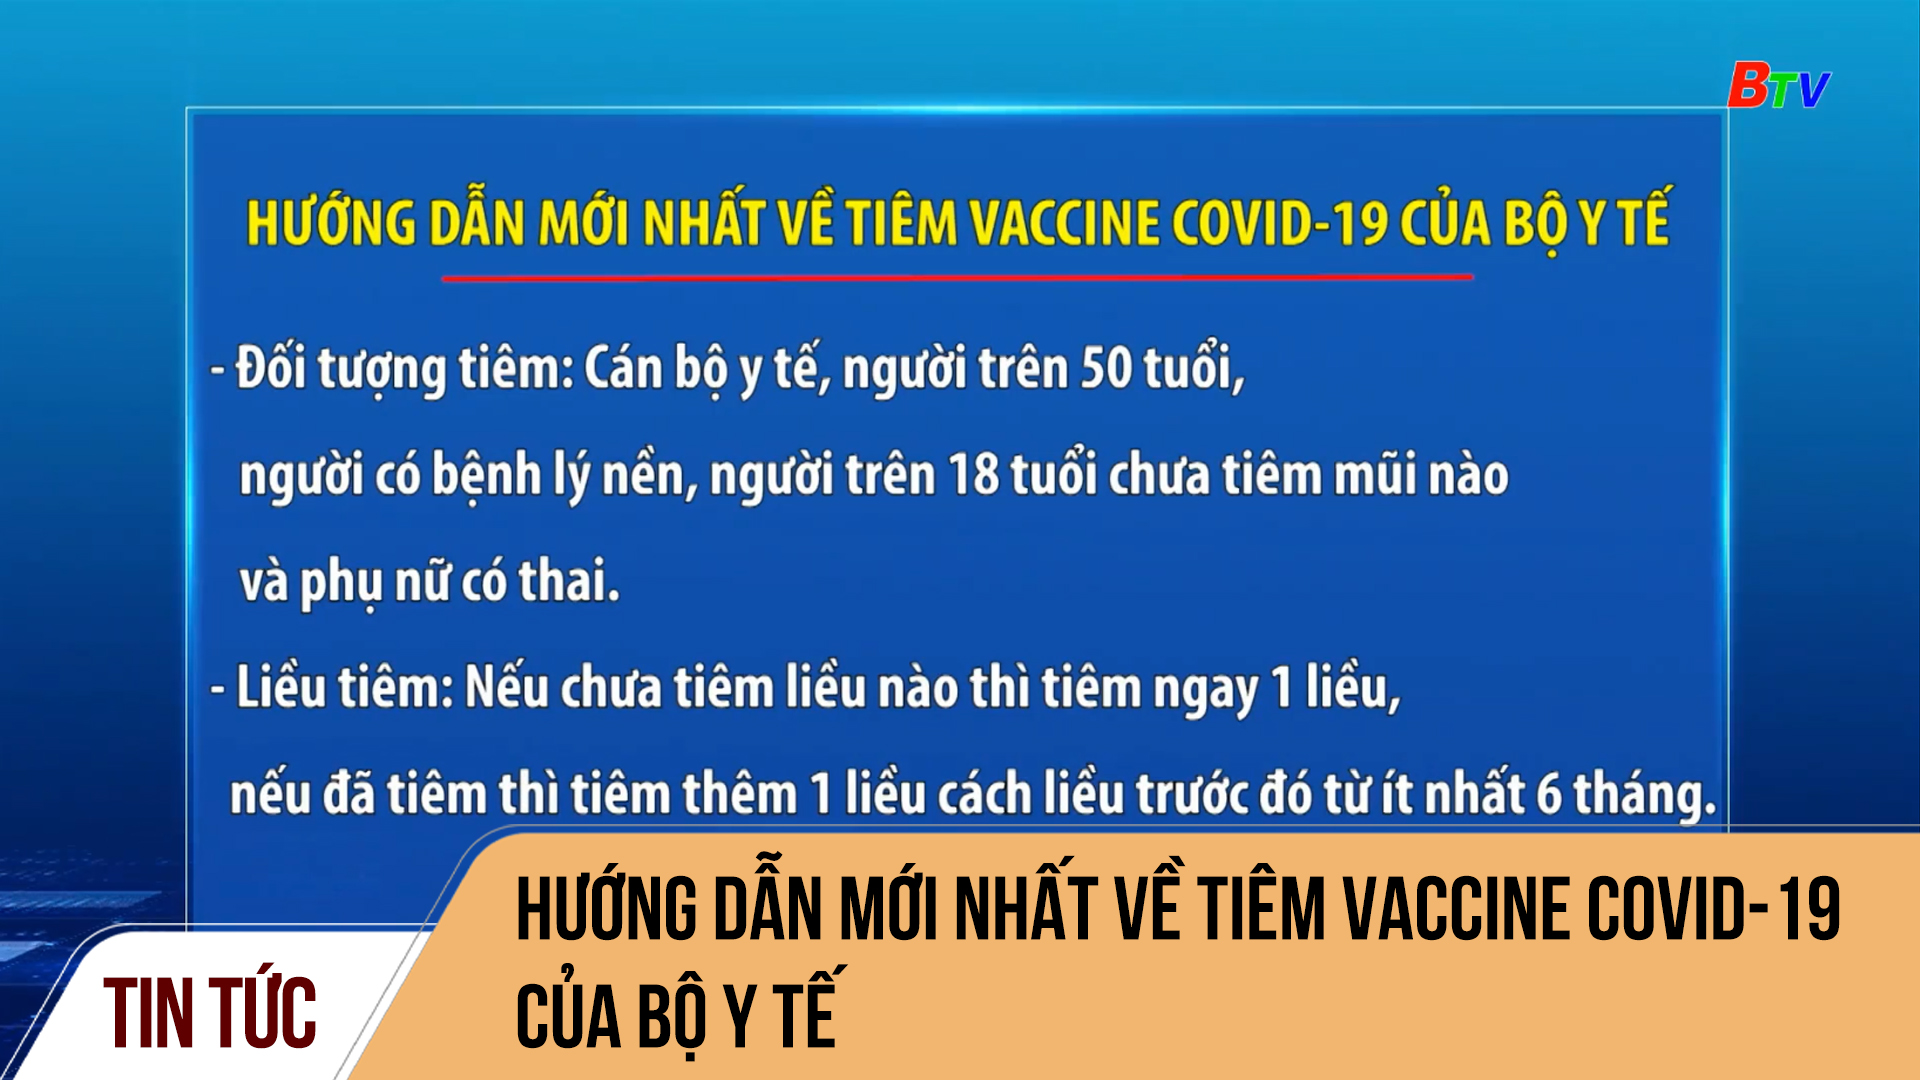 Hướng dẫn mới nhất về tiêm vaccine Covid-19 của Bộ Y tế